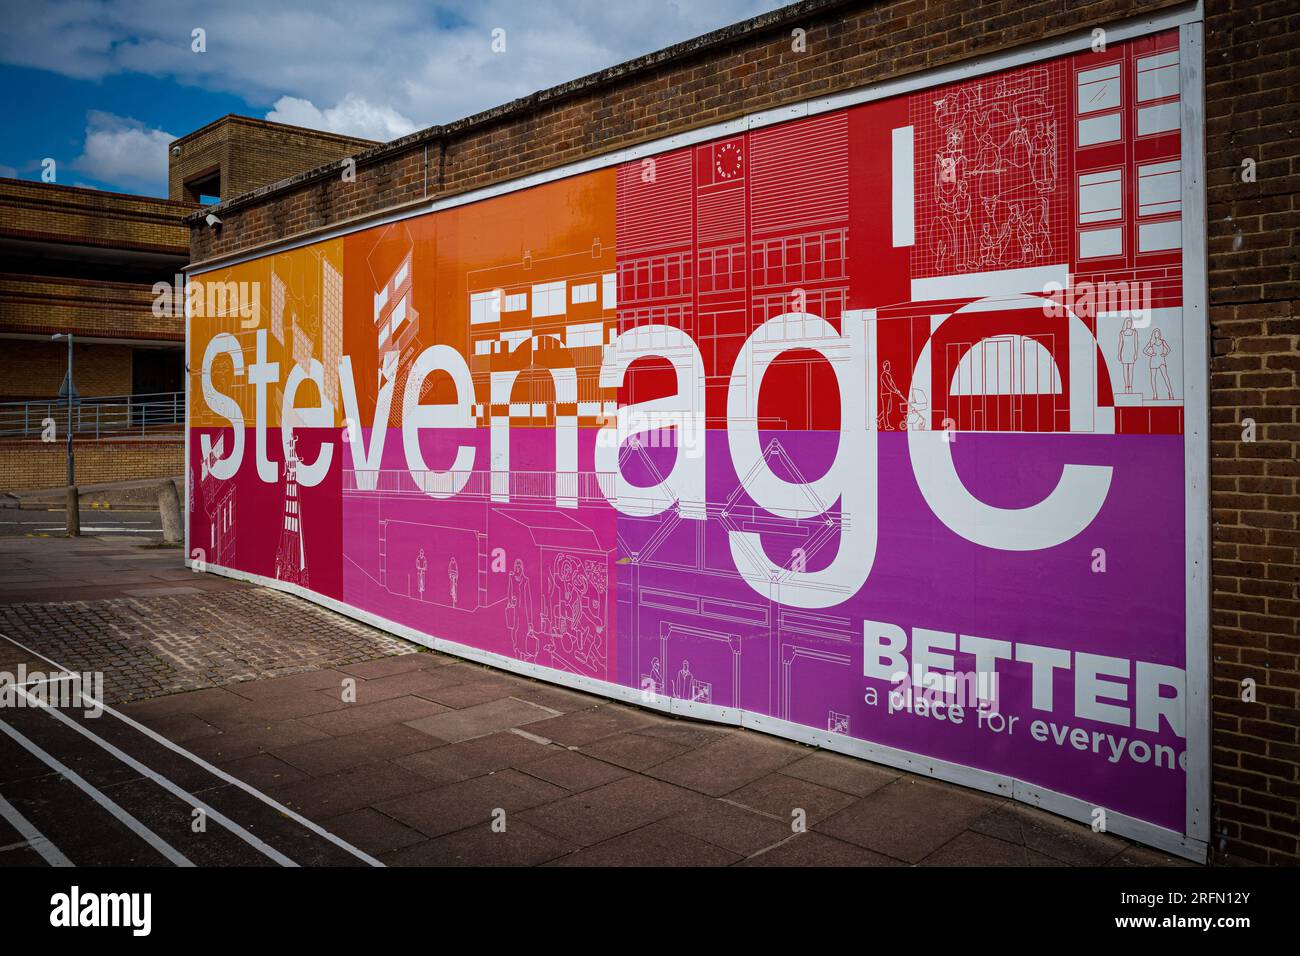 Stevenage ist besser Ein Ort für alle in Stevenage. 1 Mrd GBP Sanierungsprogramm unter der Leitung des Stevenage Borough Council & Development Board. Stockfoto